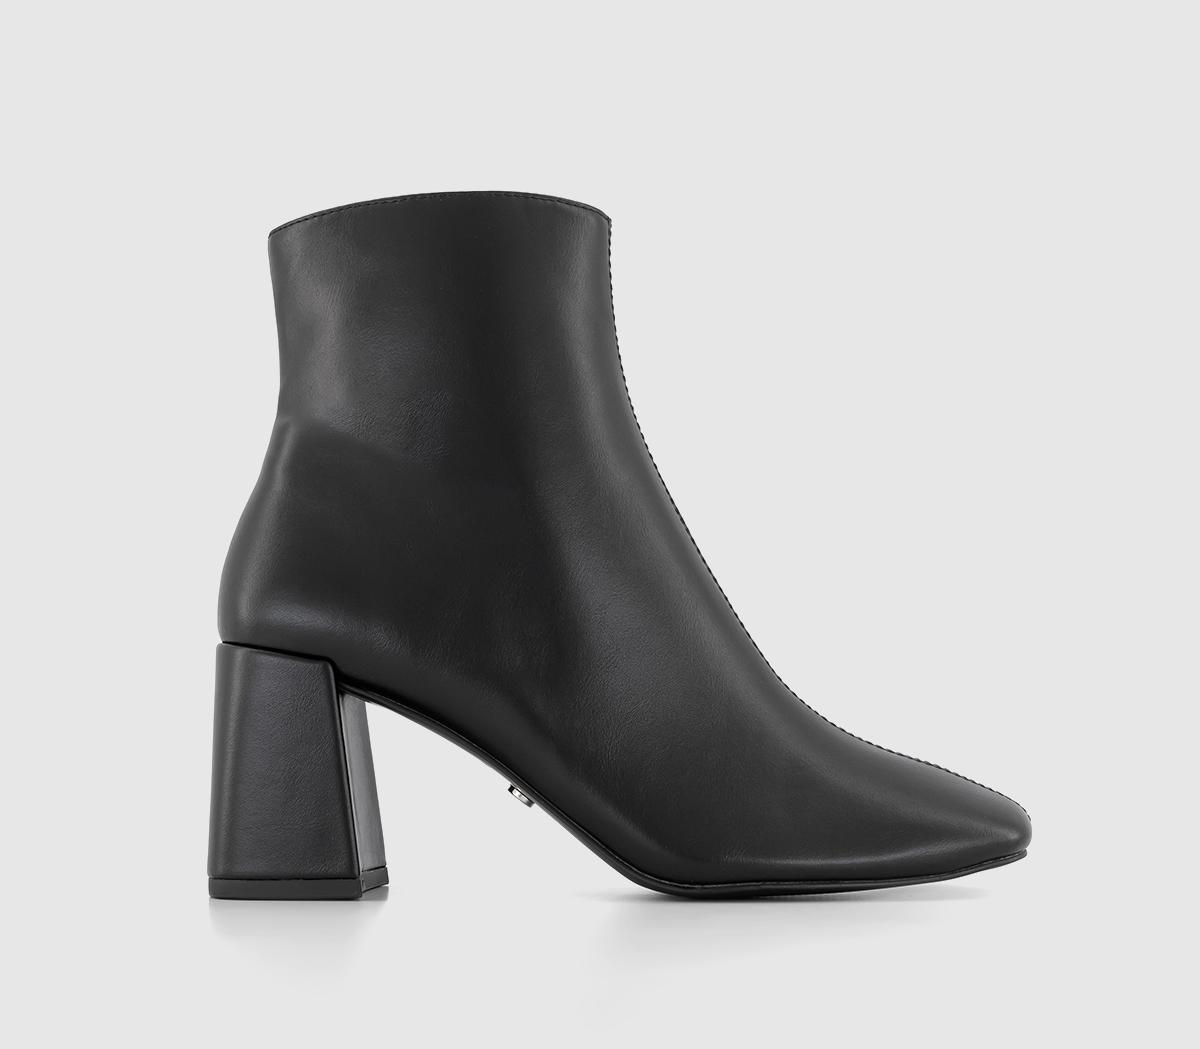 Aurelia - Centre Seam Block Heel Boots Black